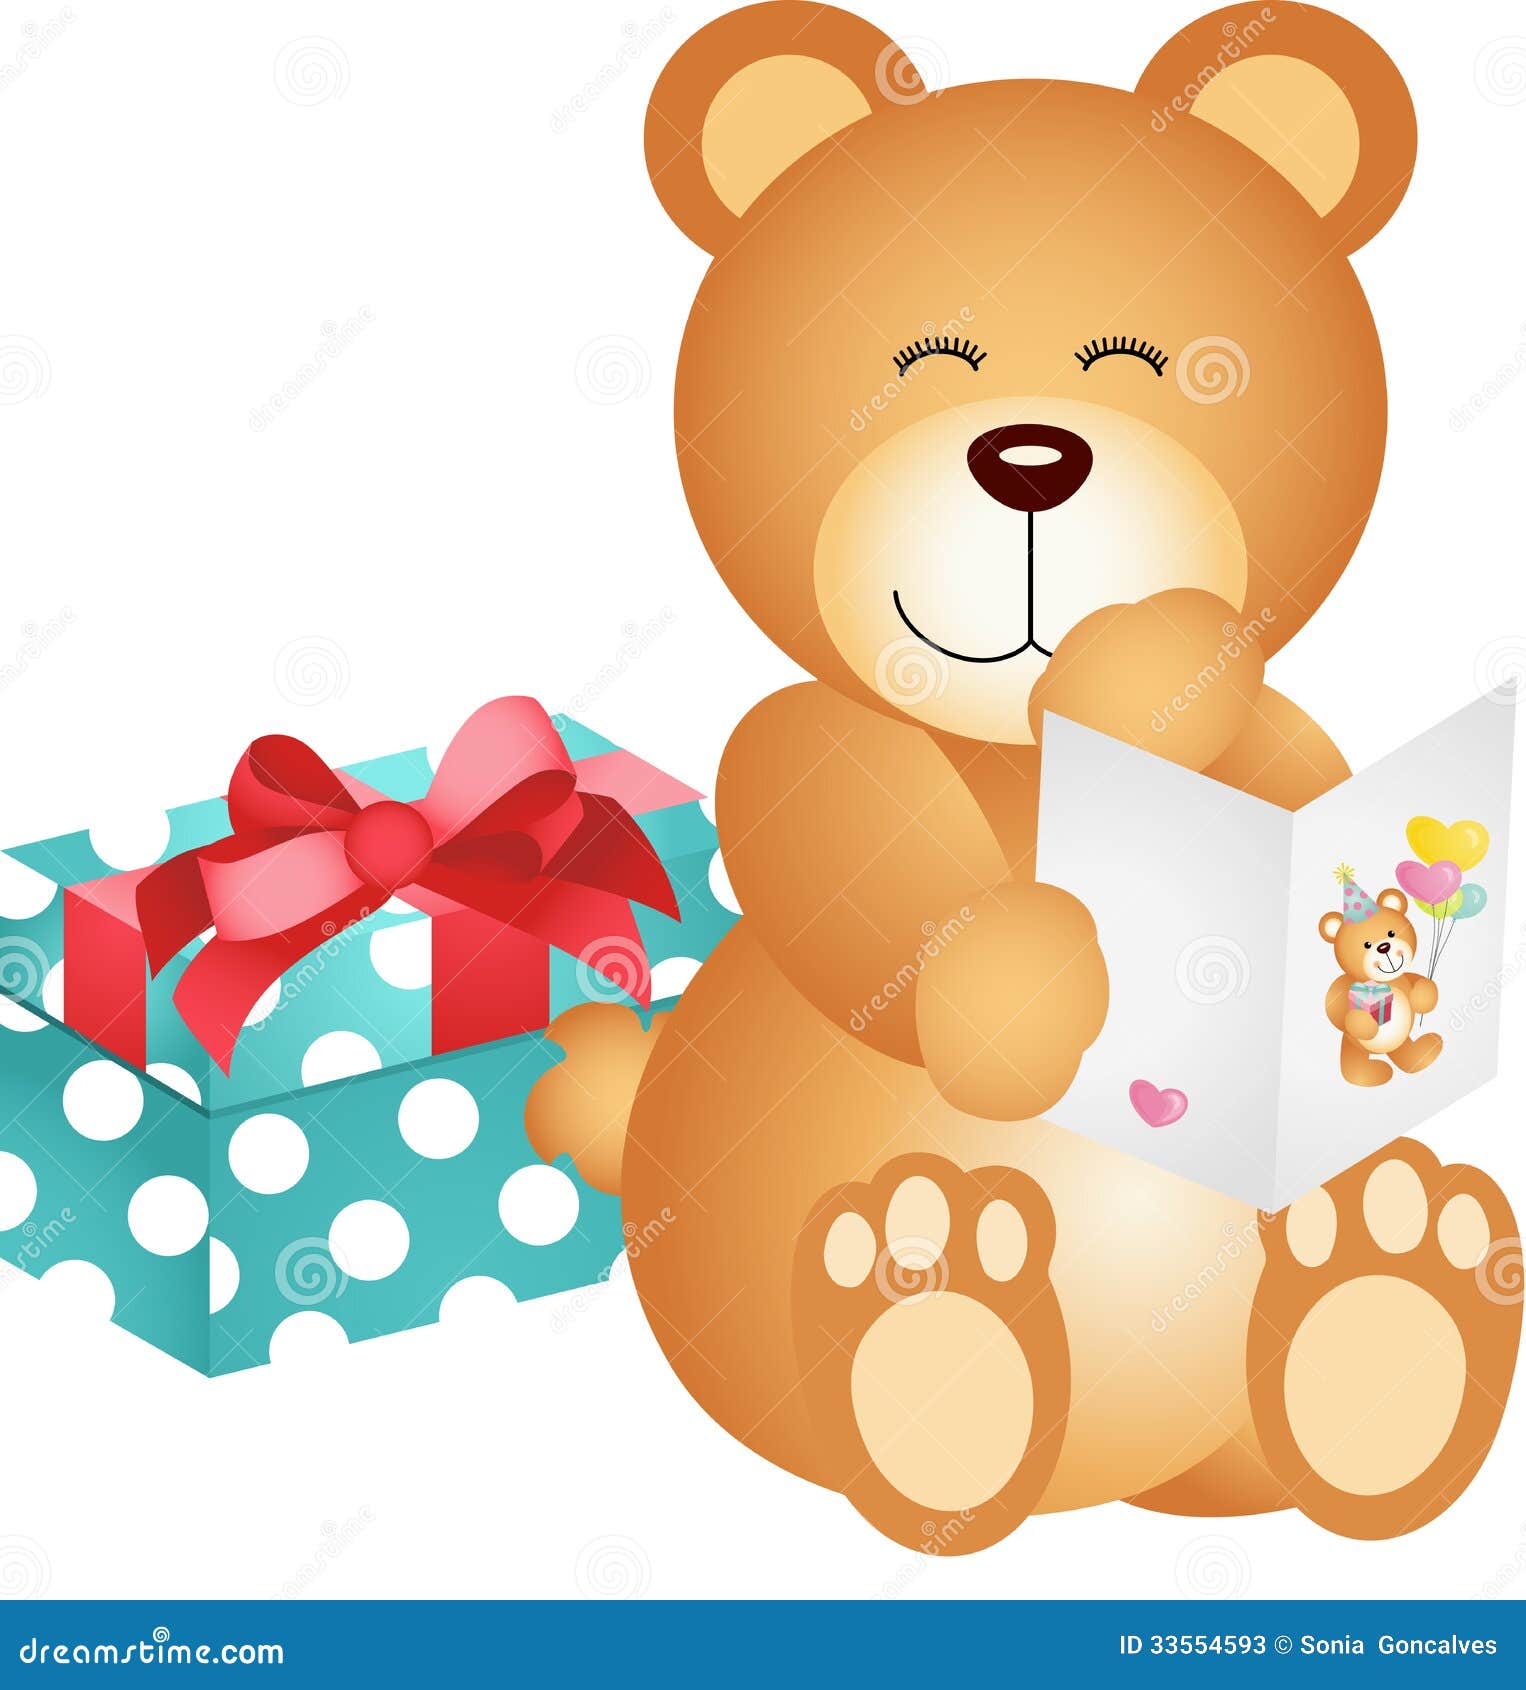 teddy bear birthday clipart - photo #27